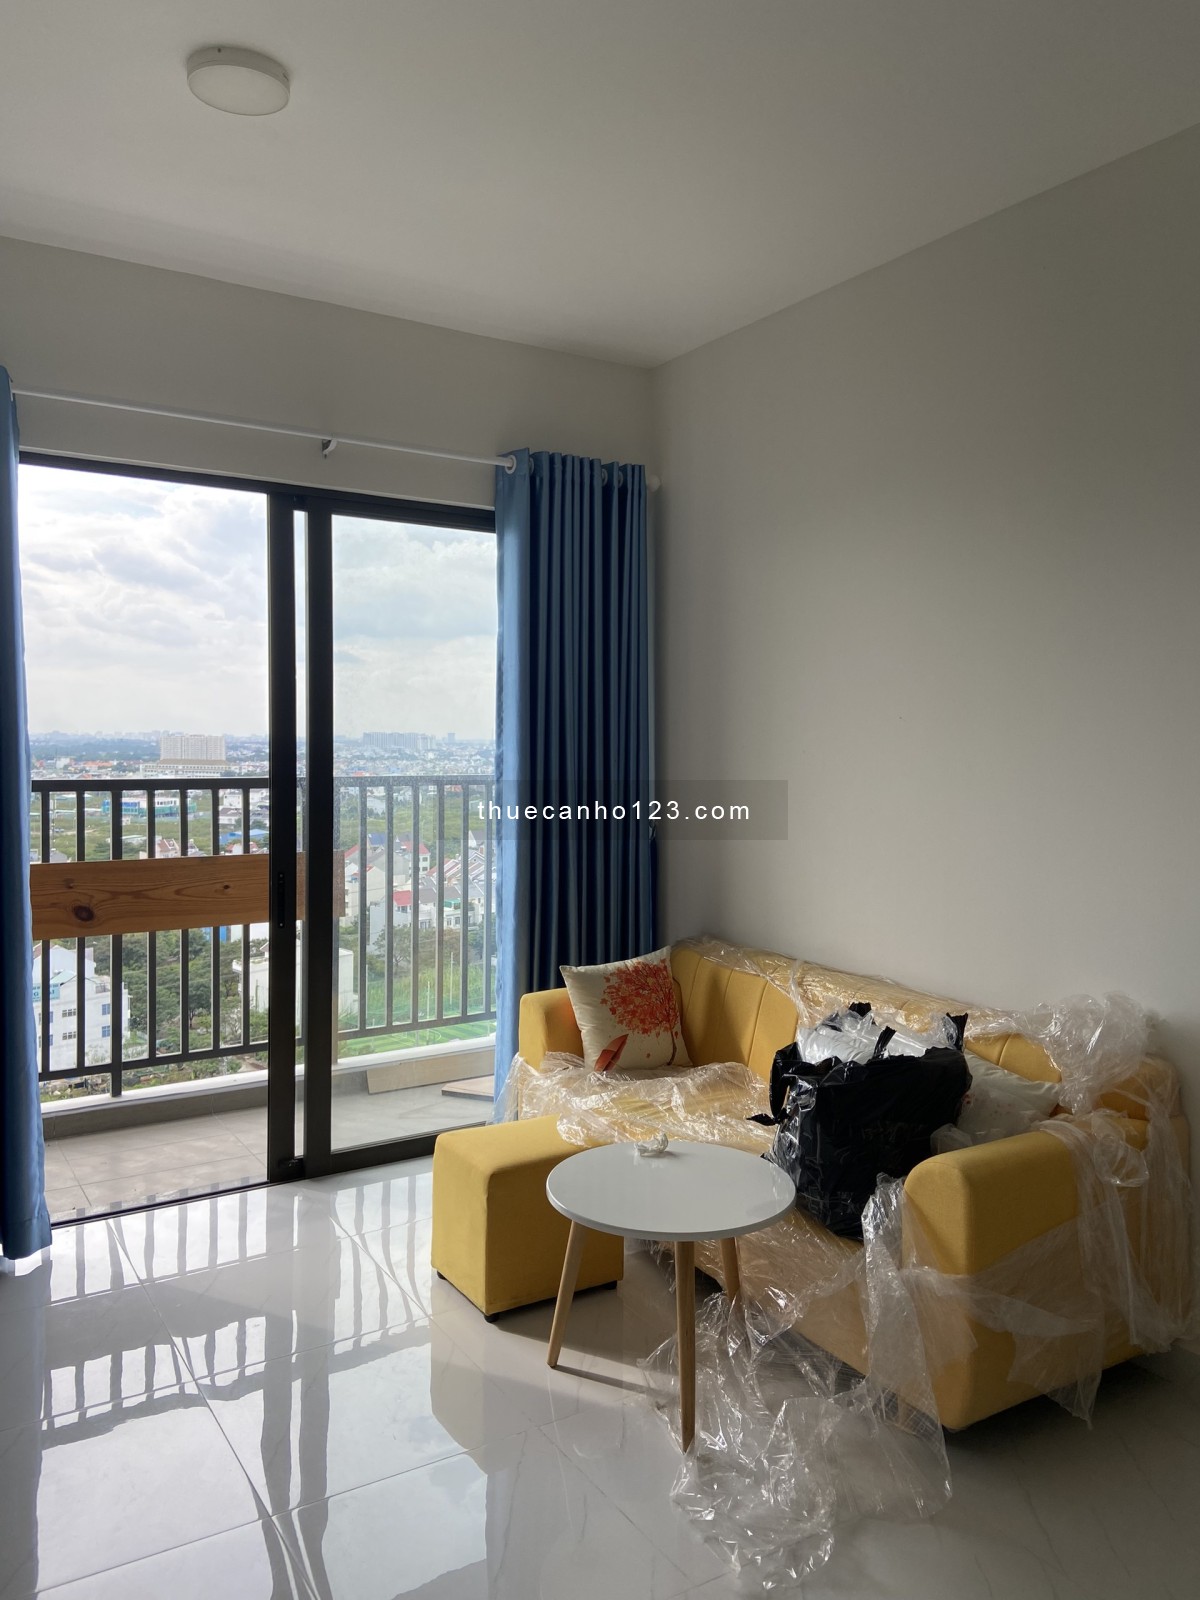 Cần cho thuê nhiều căn hộ 1,2,3 phòng ngủ chung cư Safira Khang Điền, quận 9, giá từ 6tr5